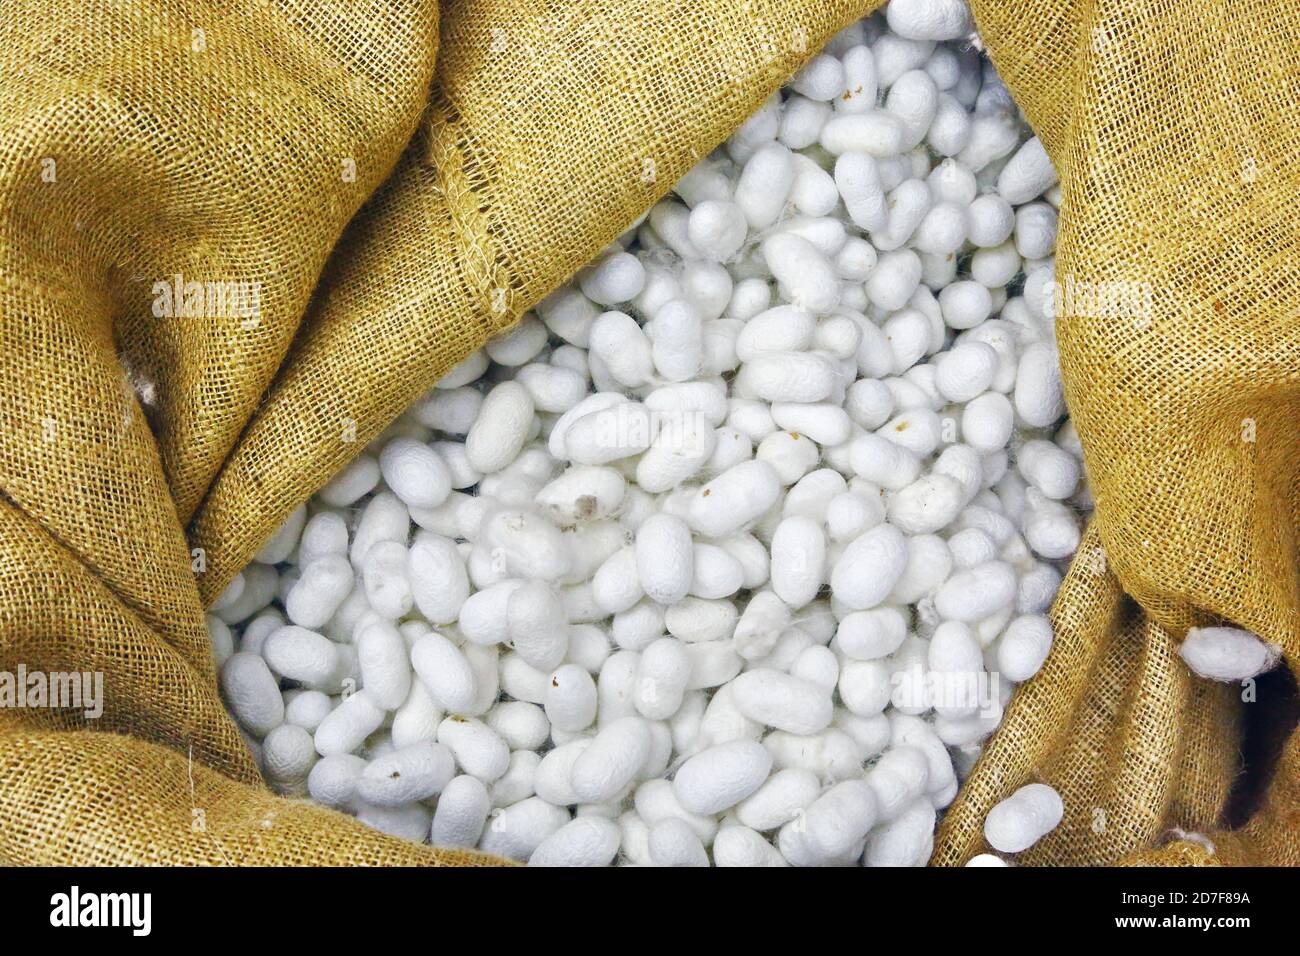 Silkworm cocoons in jute bag Stock Photo